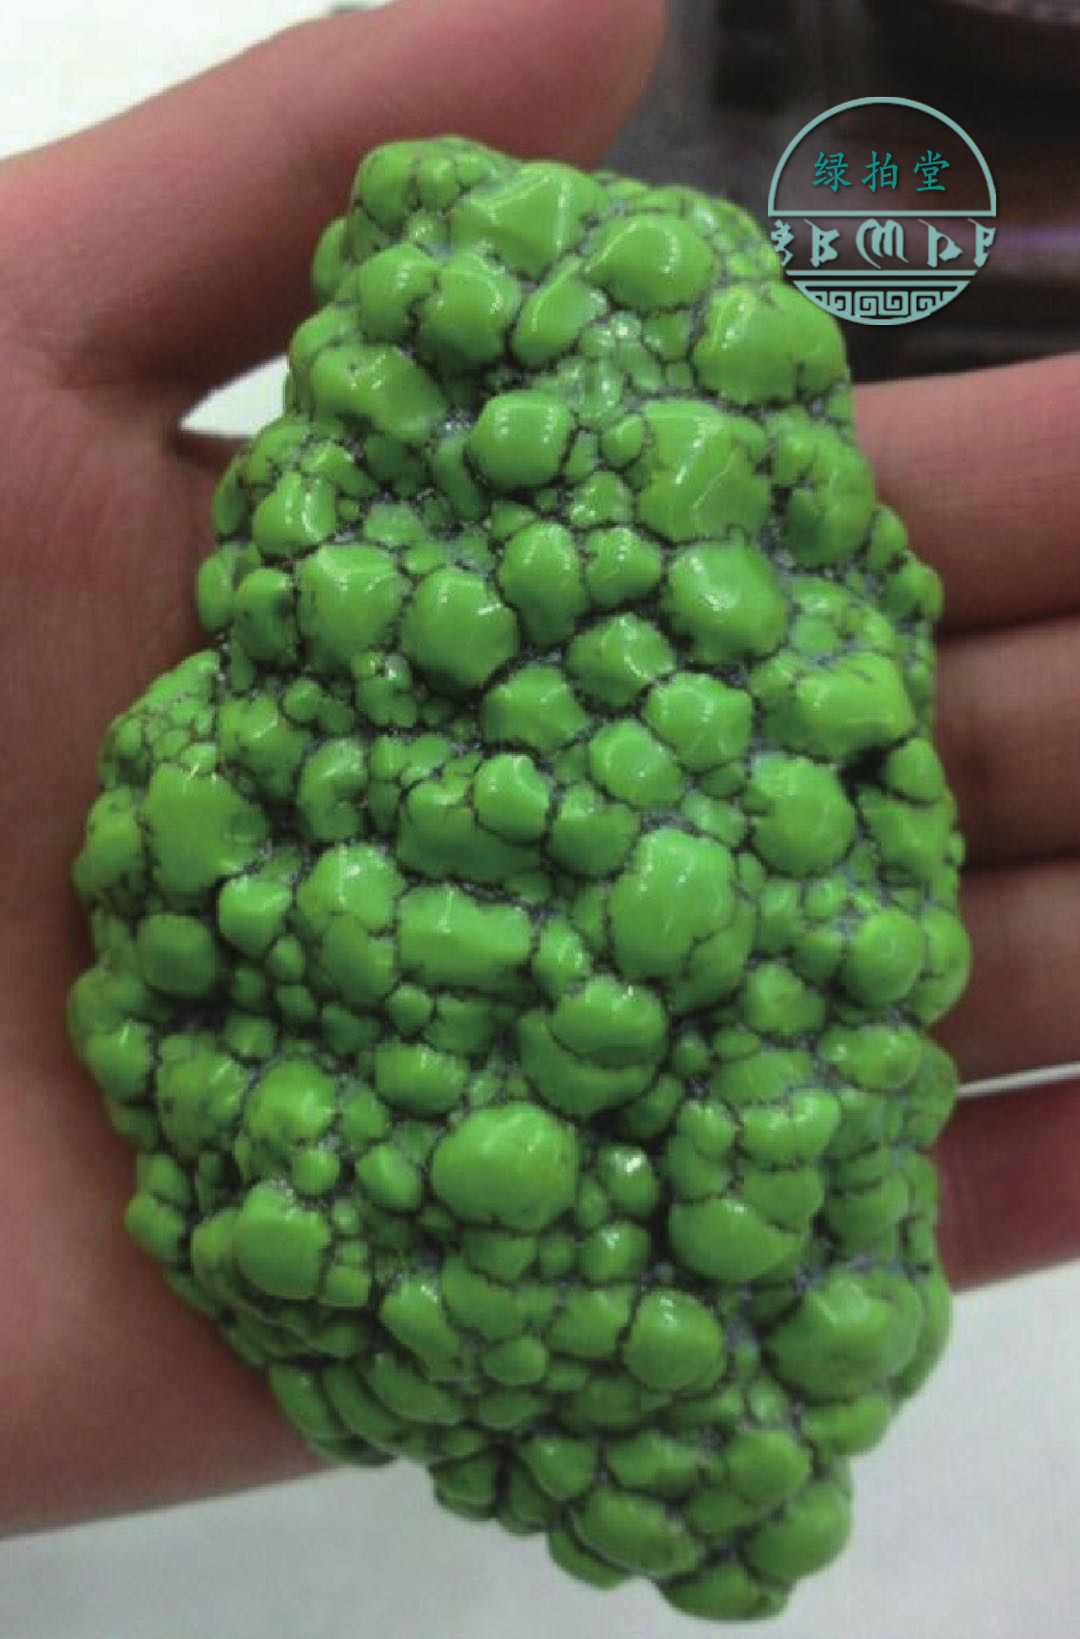 开采出来的绿松石原石尺寸均比较大,颜色多呈天蓝色,绿色和蓝绿色且